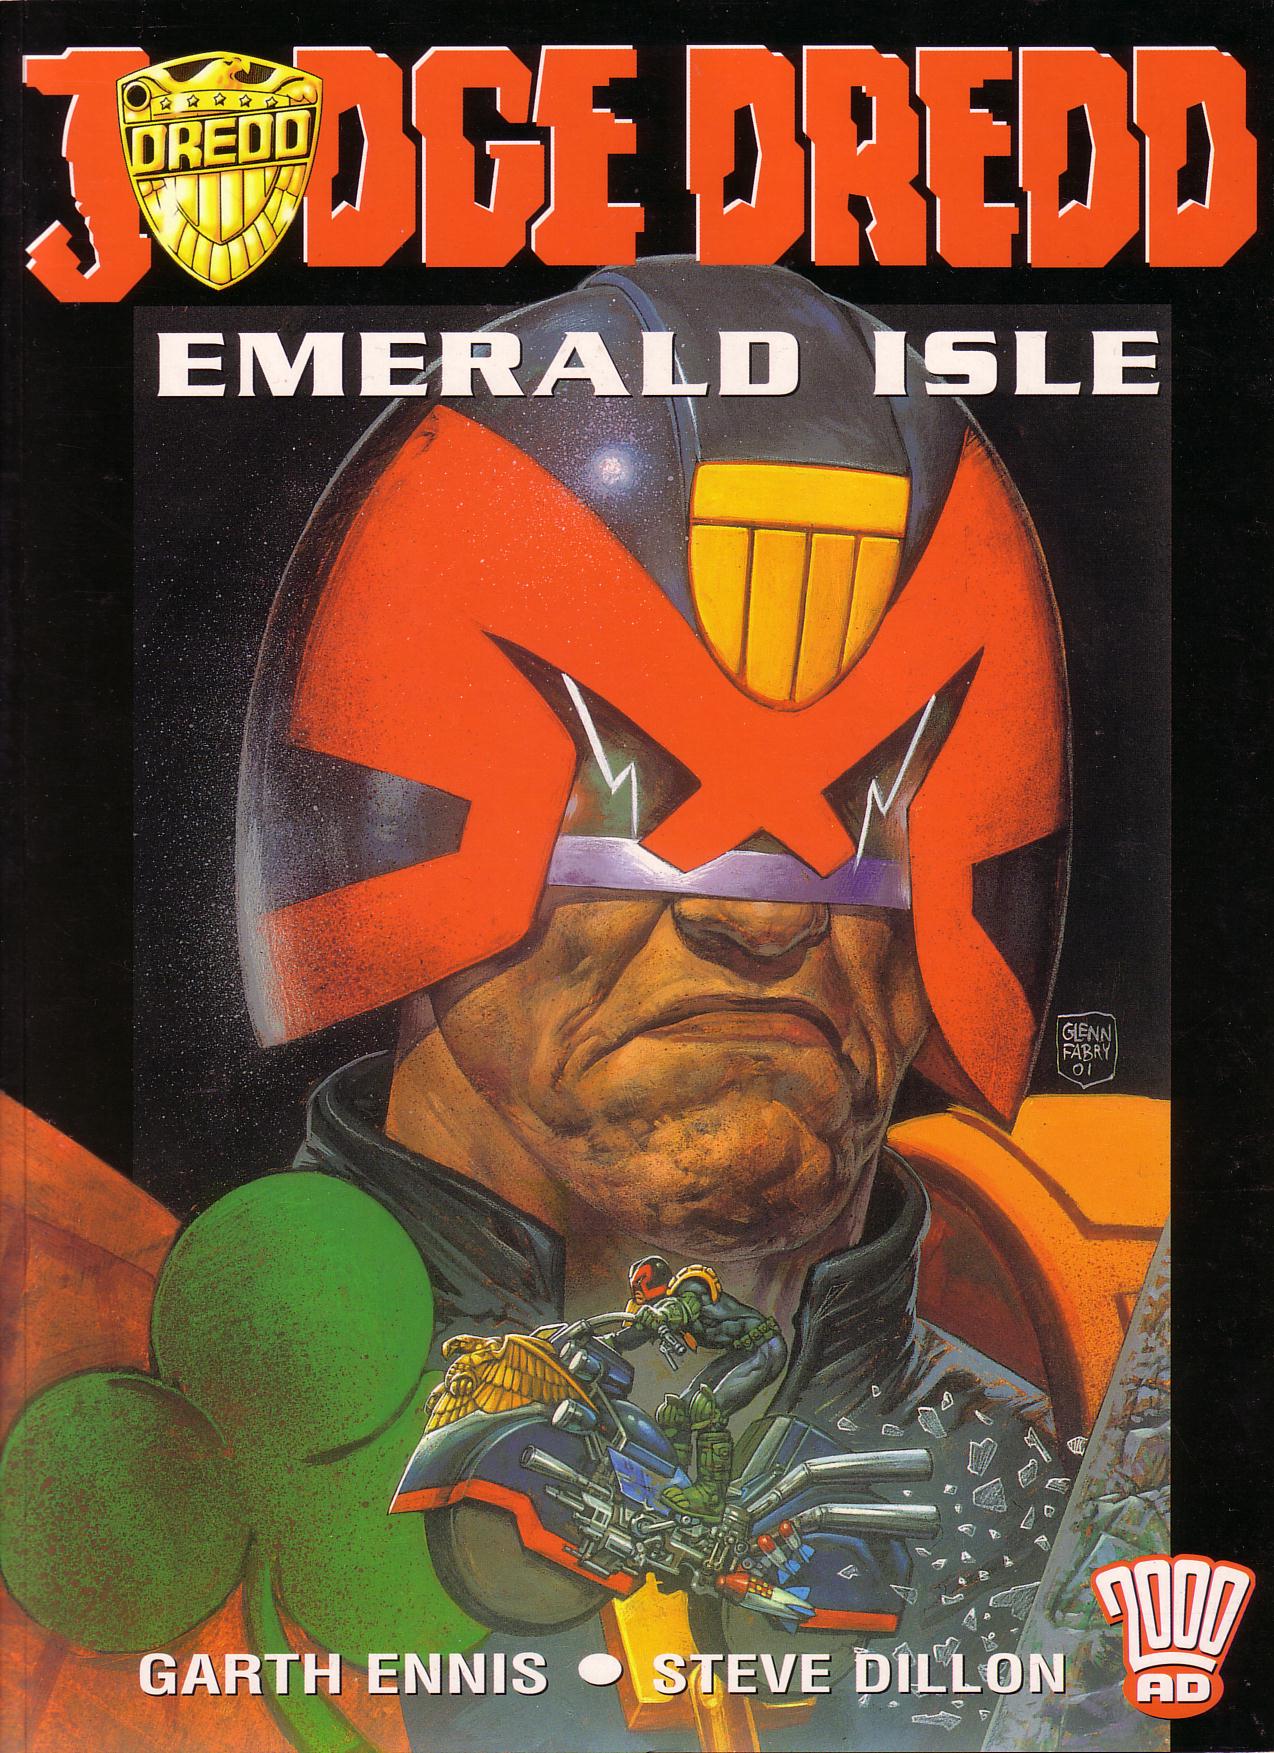 Read online Judge Dredd: Emerald Isle comic -  Issue # TPB - 1